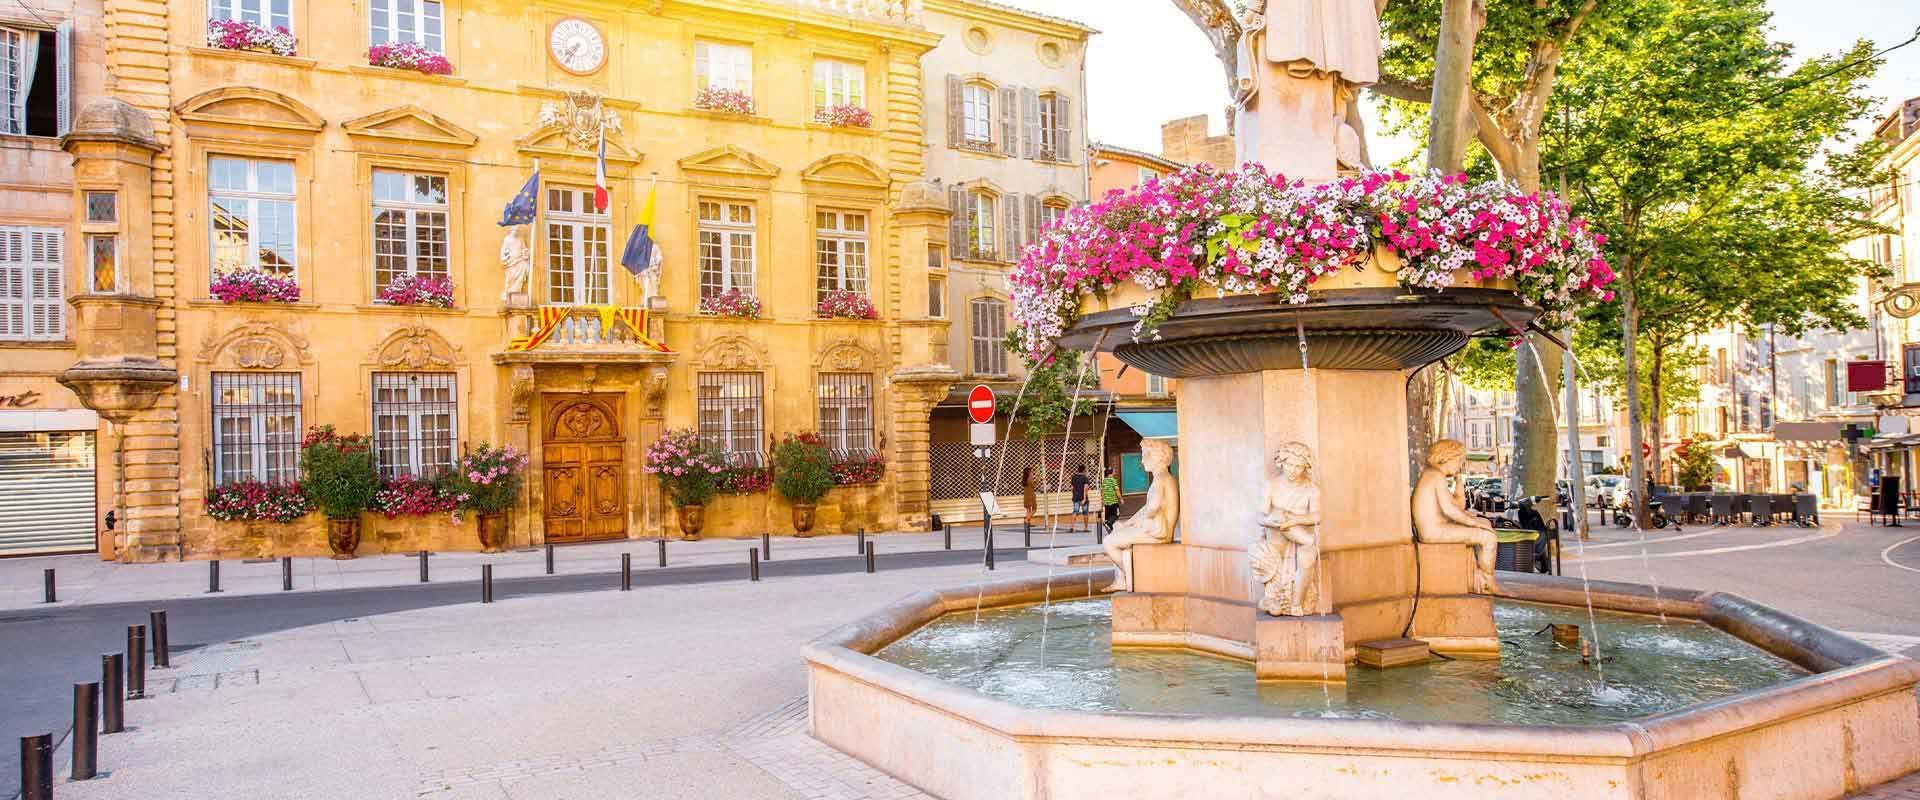 Magnifique commune de Salon-de-Provence